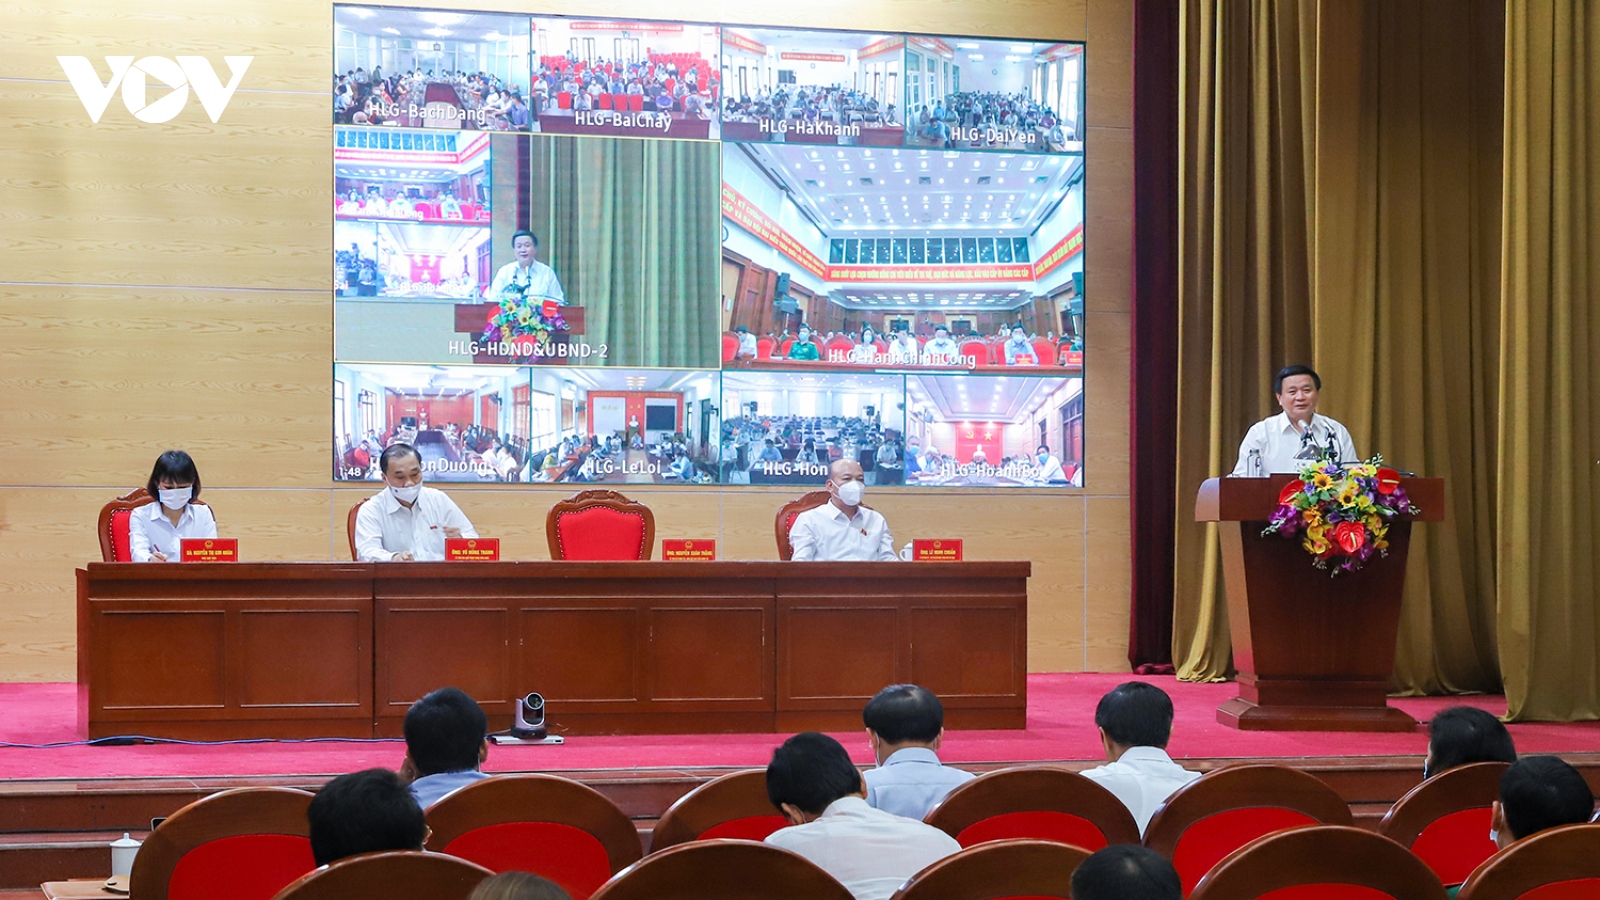 Ứng cử viên đại biểu Quốc hội vận động bầu cử tại Quảng Ninh